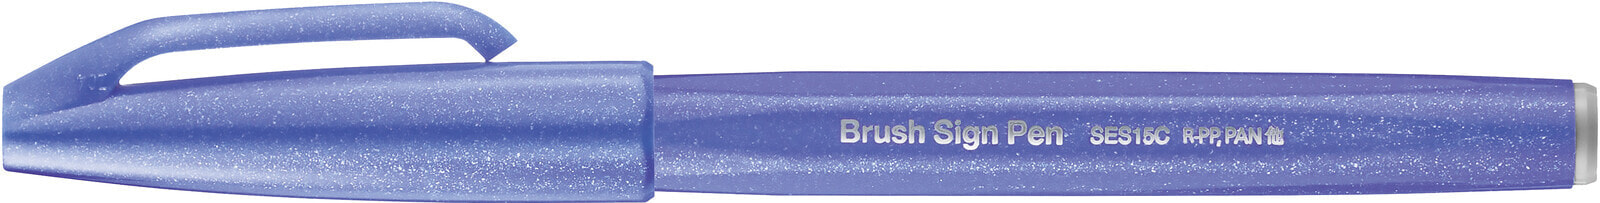 Brush Sign - Fine - 1 colours - Violet - Brush tip - 0.5 mm - 2 mm